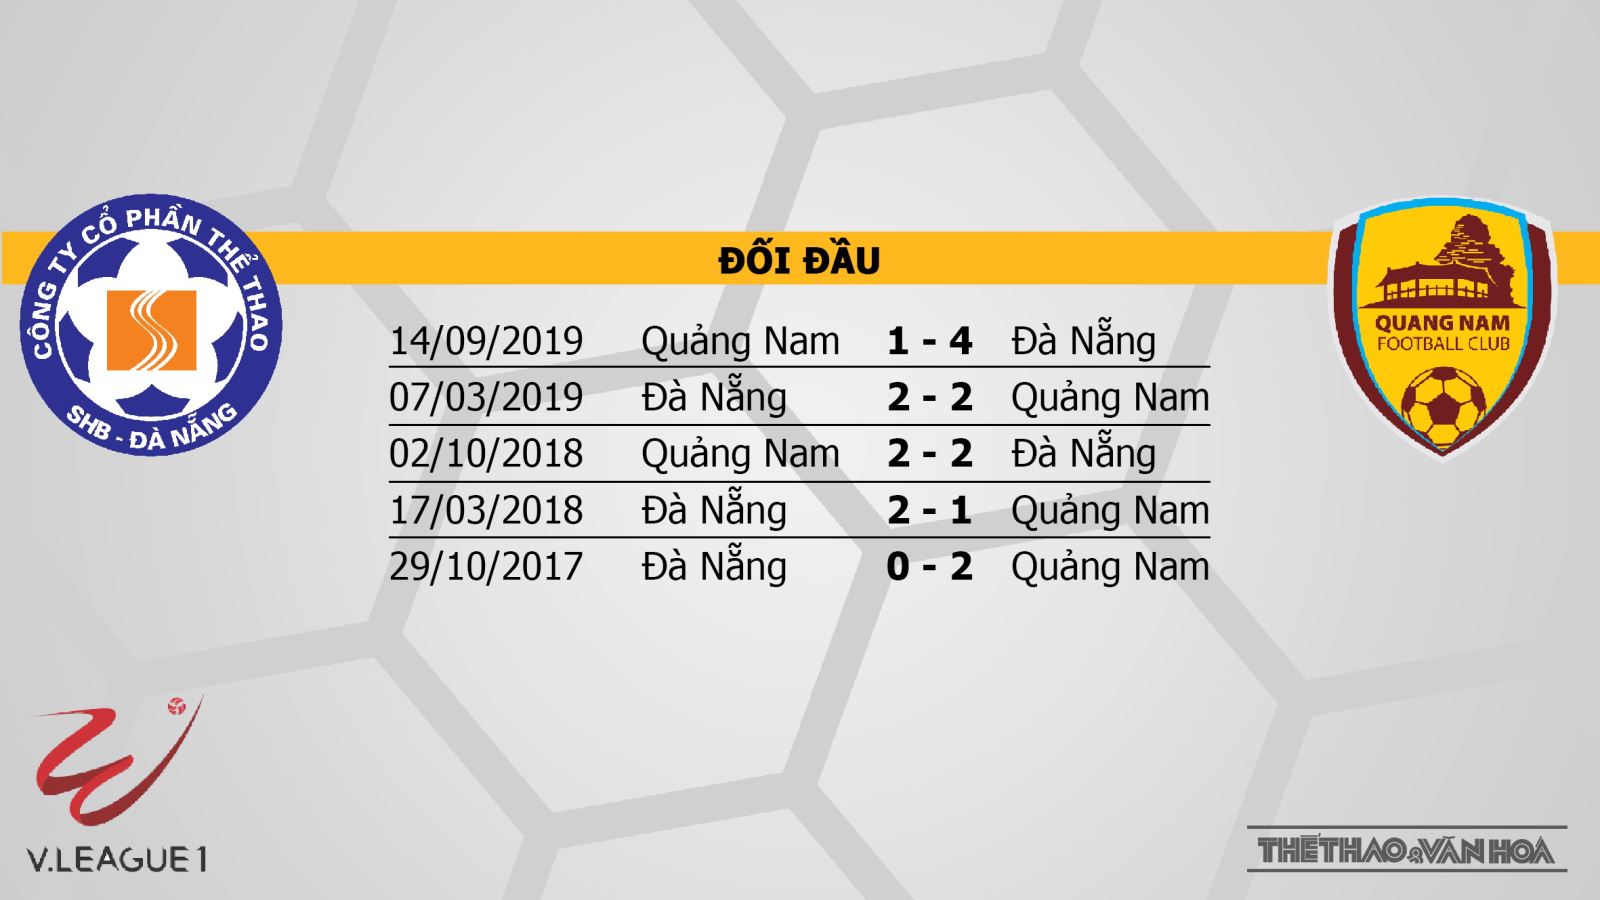 SHB Đà Nẵng vs Quảng Nam, Đà Nẵng đấu với Quảng Nam, nhận định, dự đoán bóng đá, kèo bóng đá, V-League